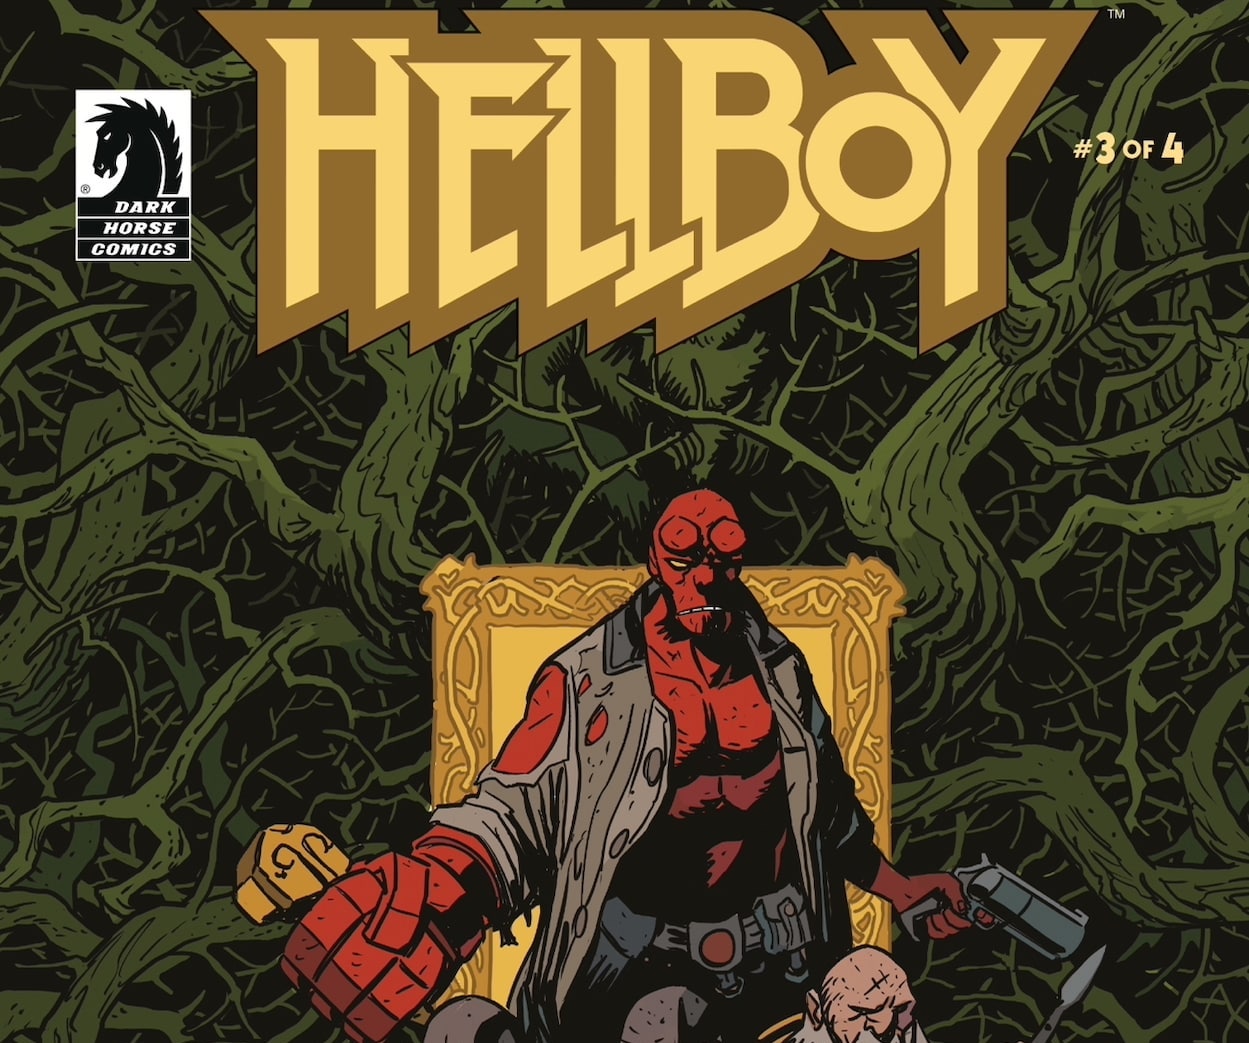 EXCLUSIVE Dark Horse Preview: Hellboy: Bones of Giants #3